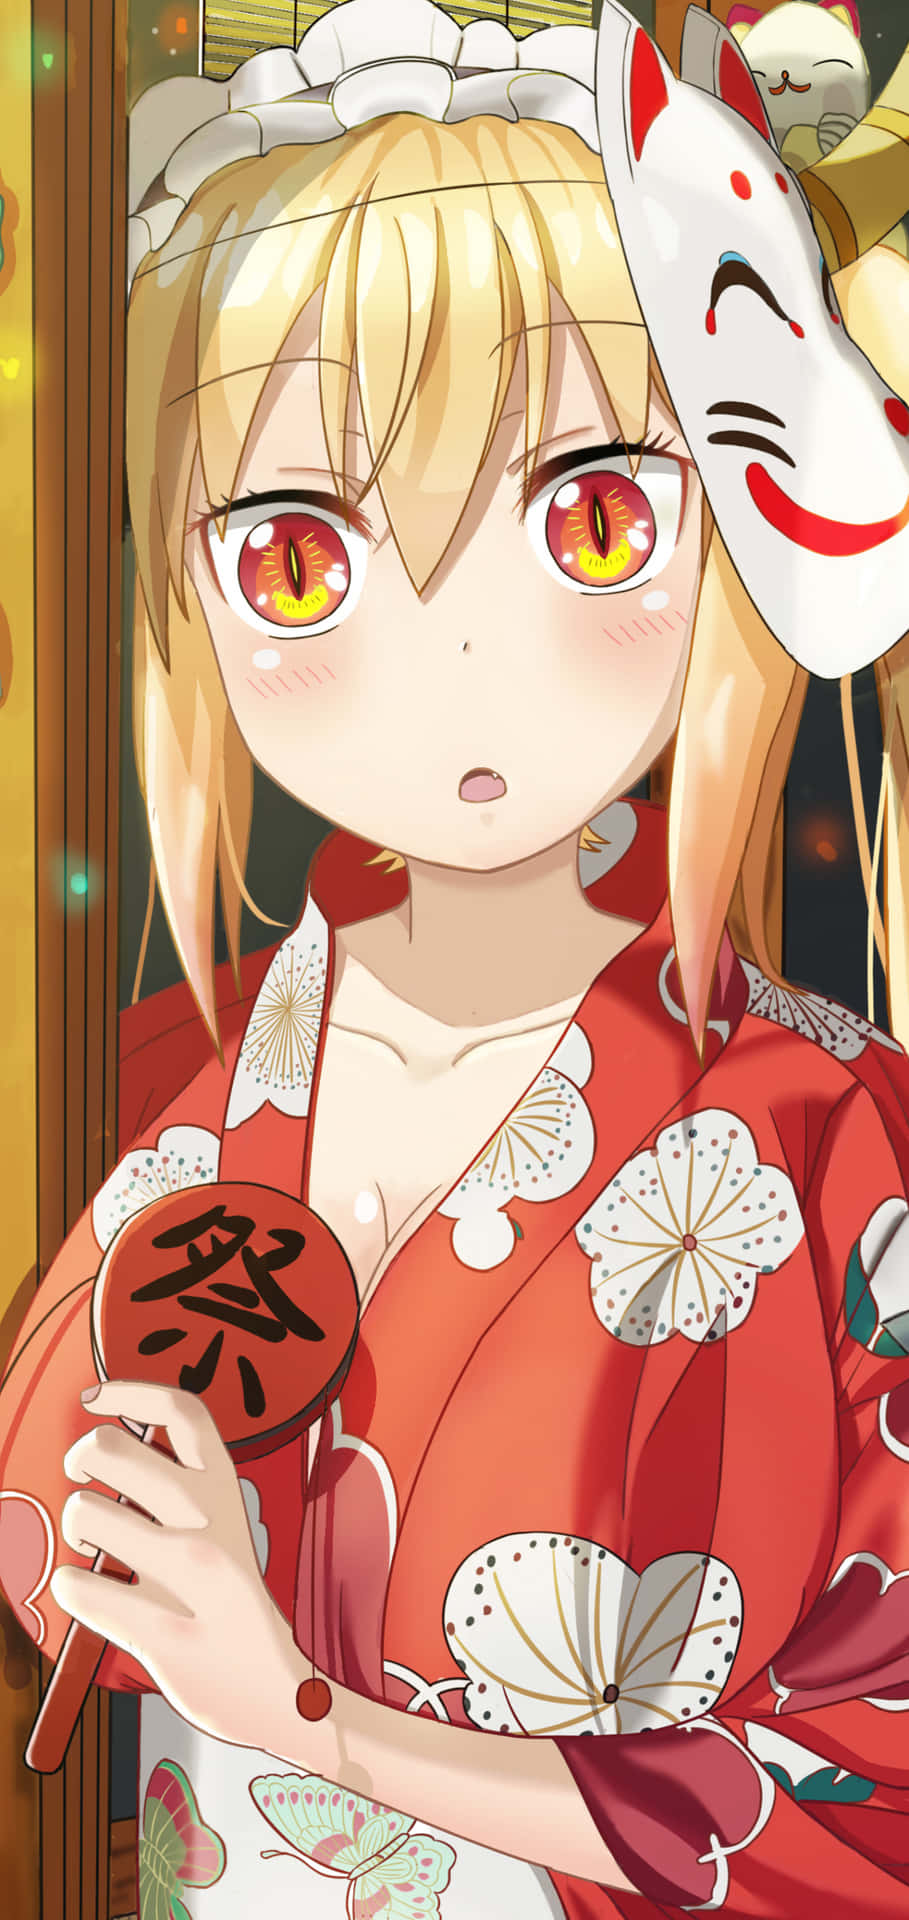 A Girl In A Kimono Holding A Kimono Wallpaper